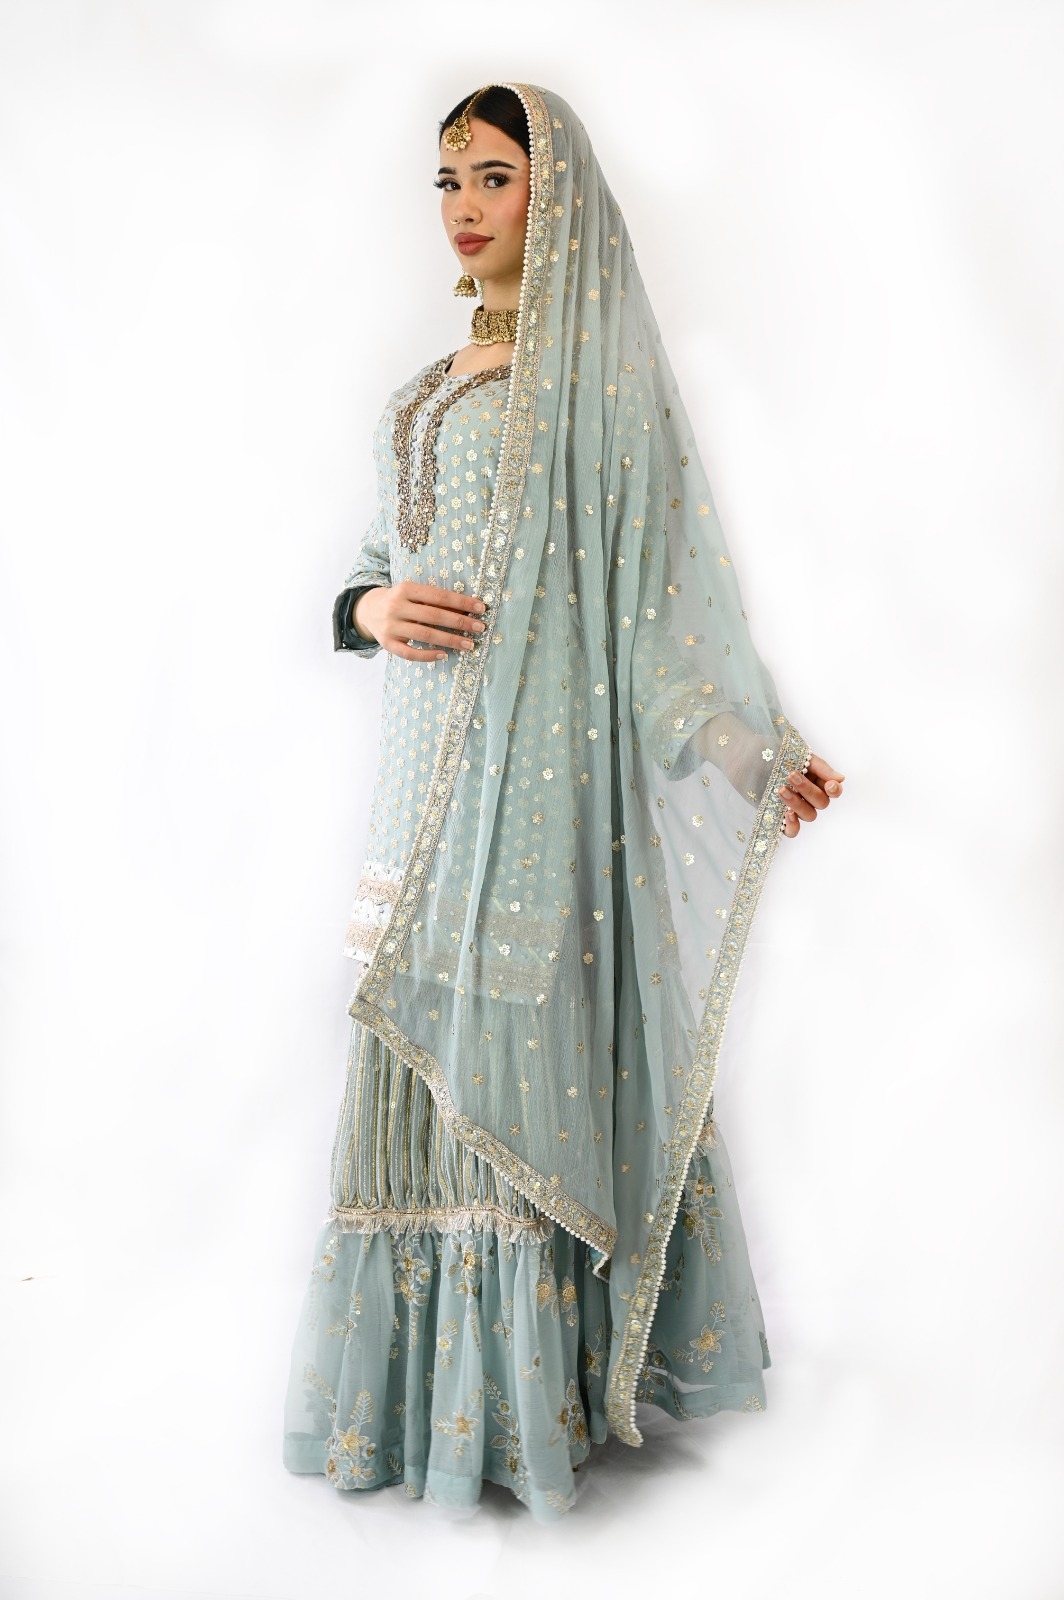 Brand New light blue Readymade Ruffle Lehenga lehnga kurti Indian Pakistani Wedding bridal dress 3pc outfit